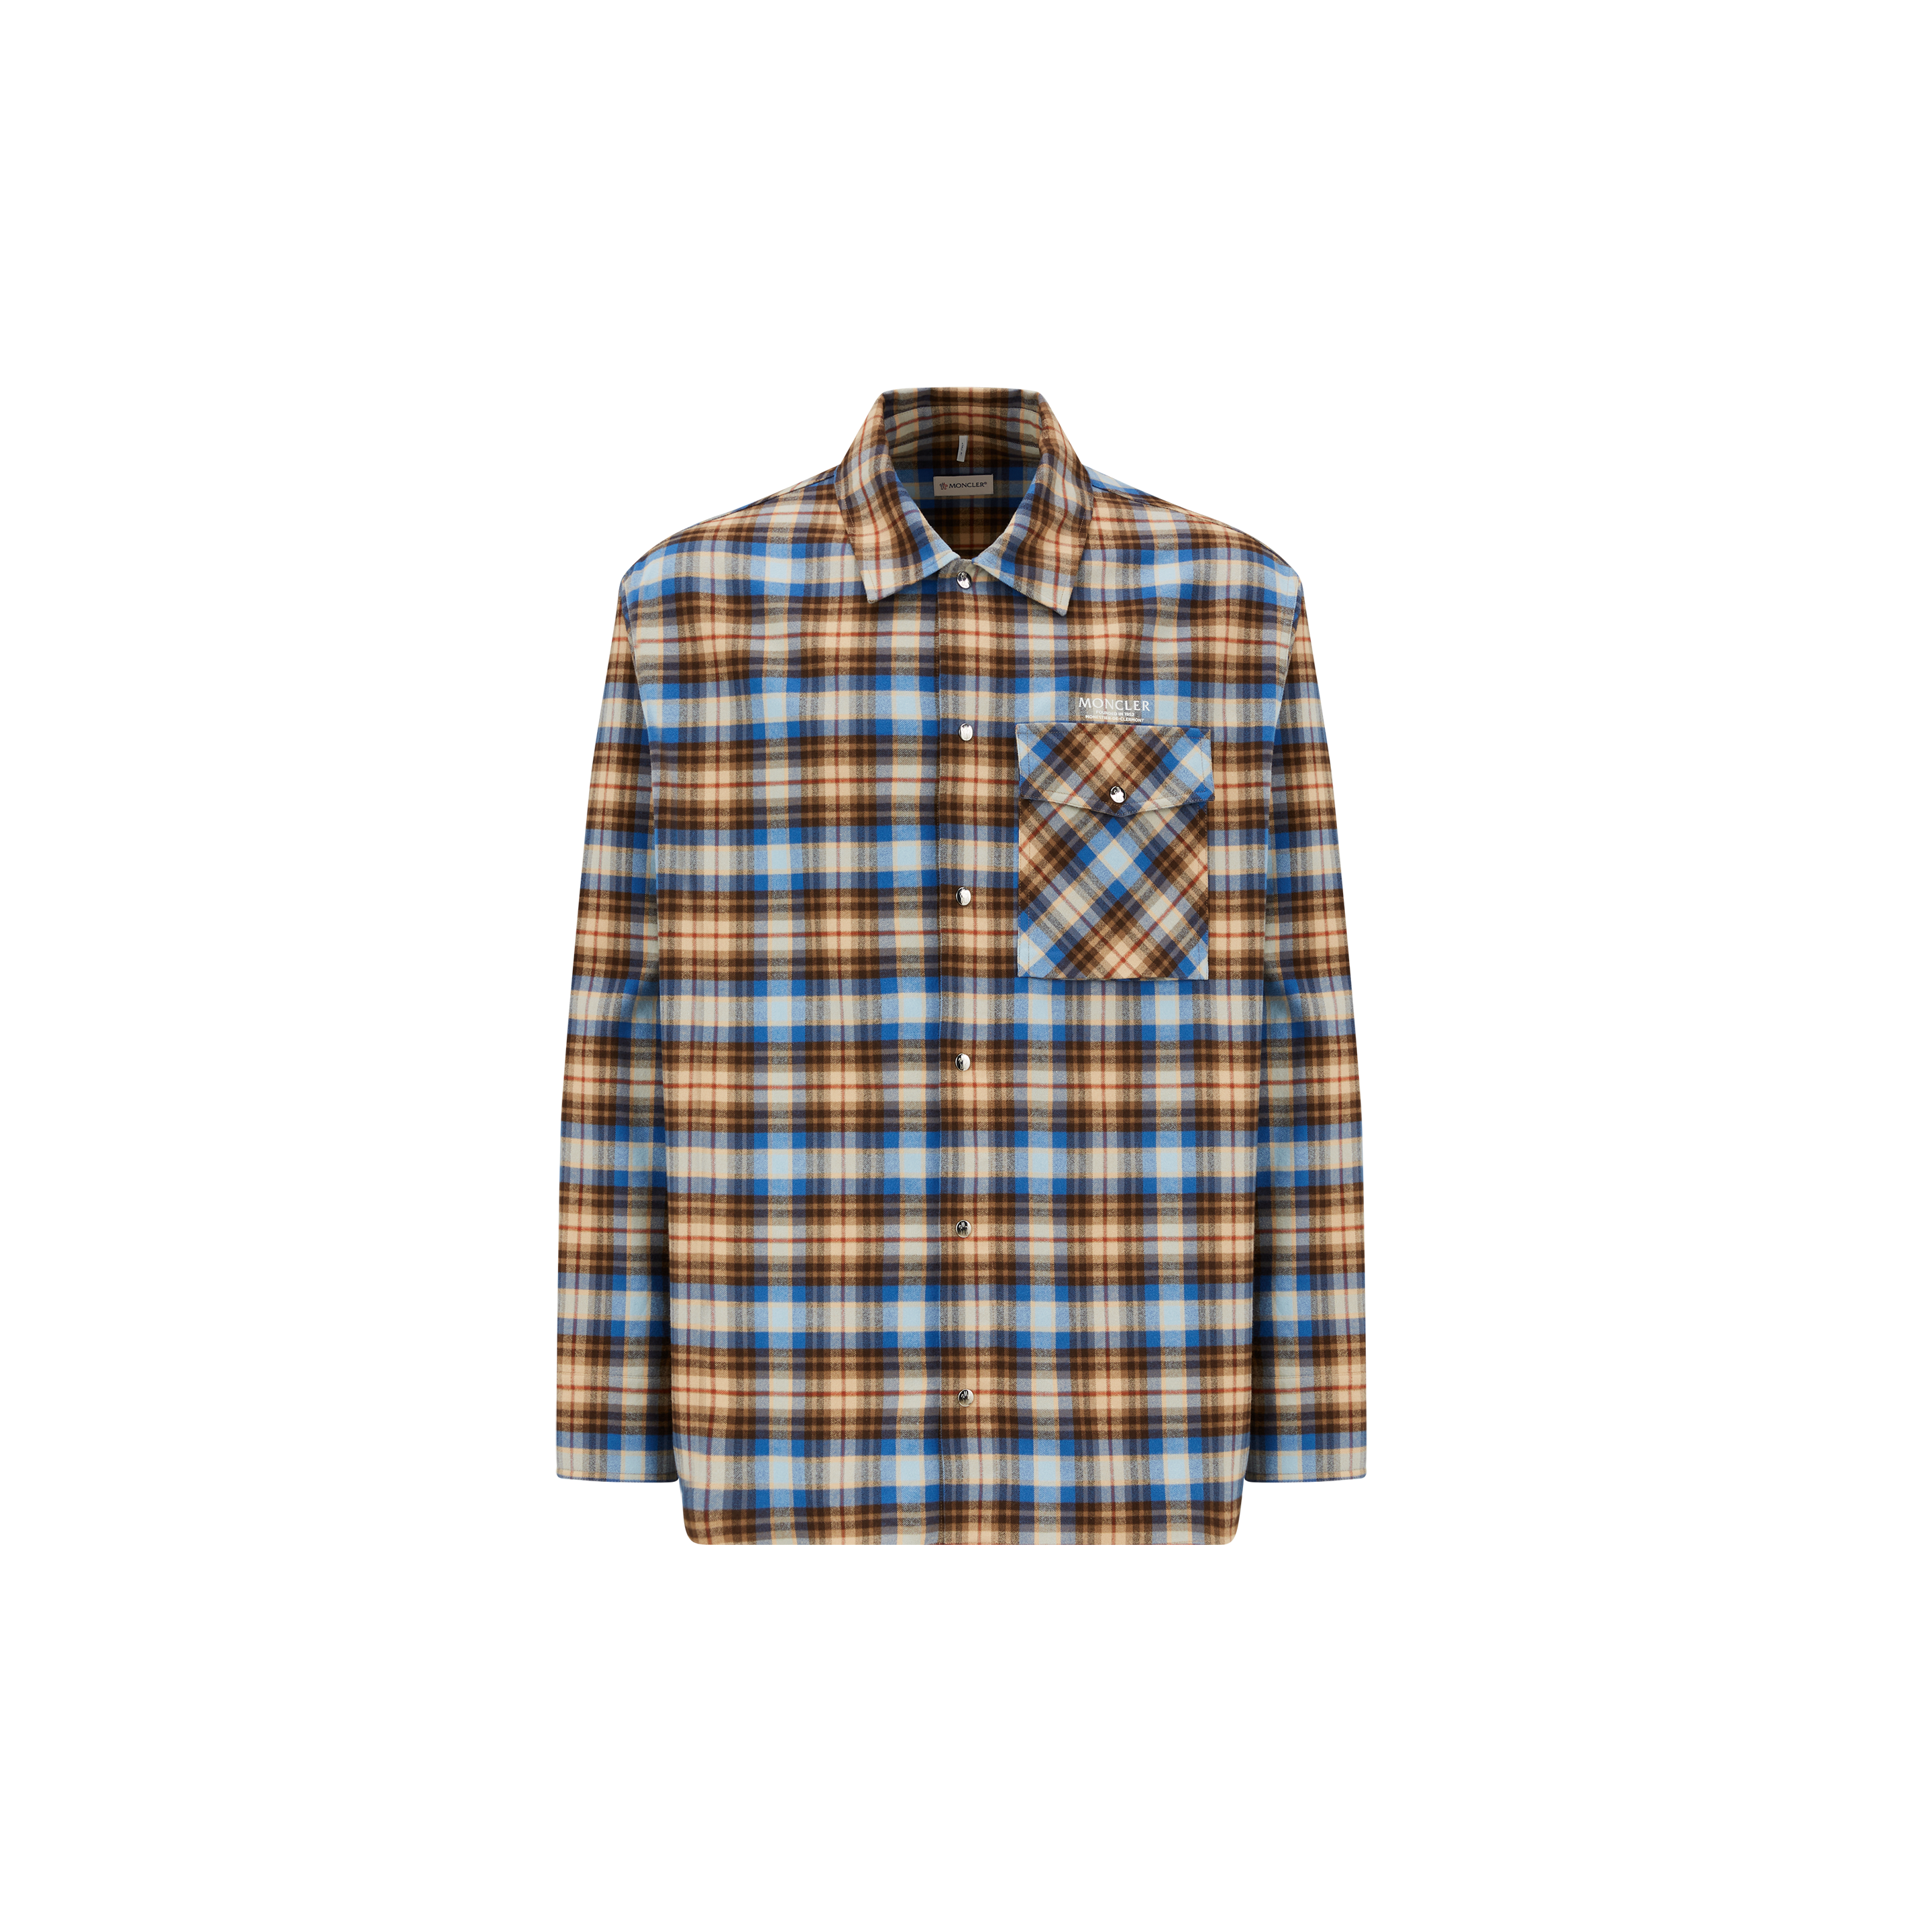 Moncler Collection Flannel Shirt Multicolour Size Xxl